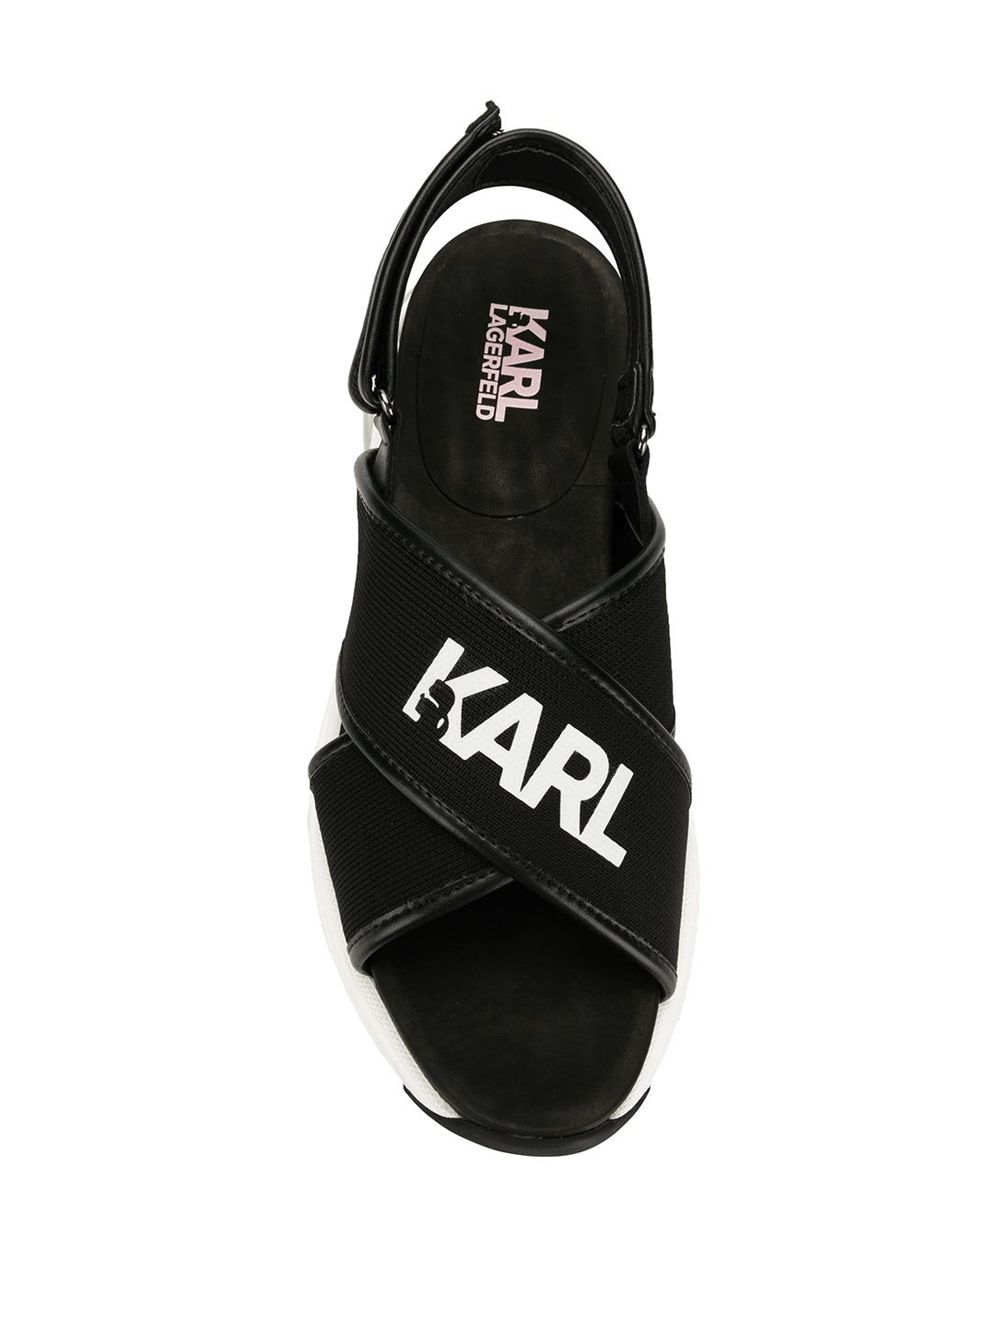 фото Karl Lagerfeld сандалии с ремешками Ventura Karlx x